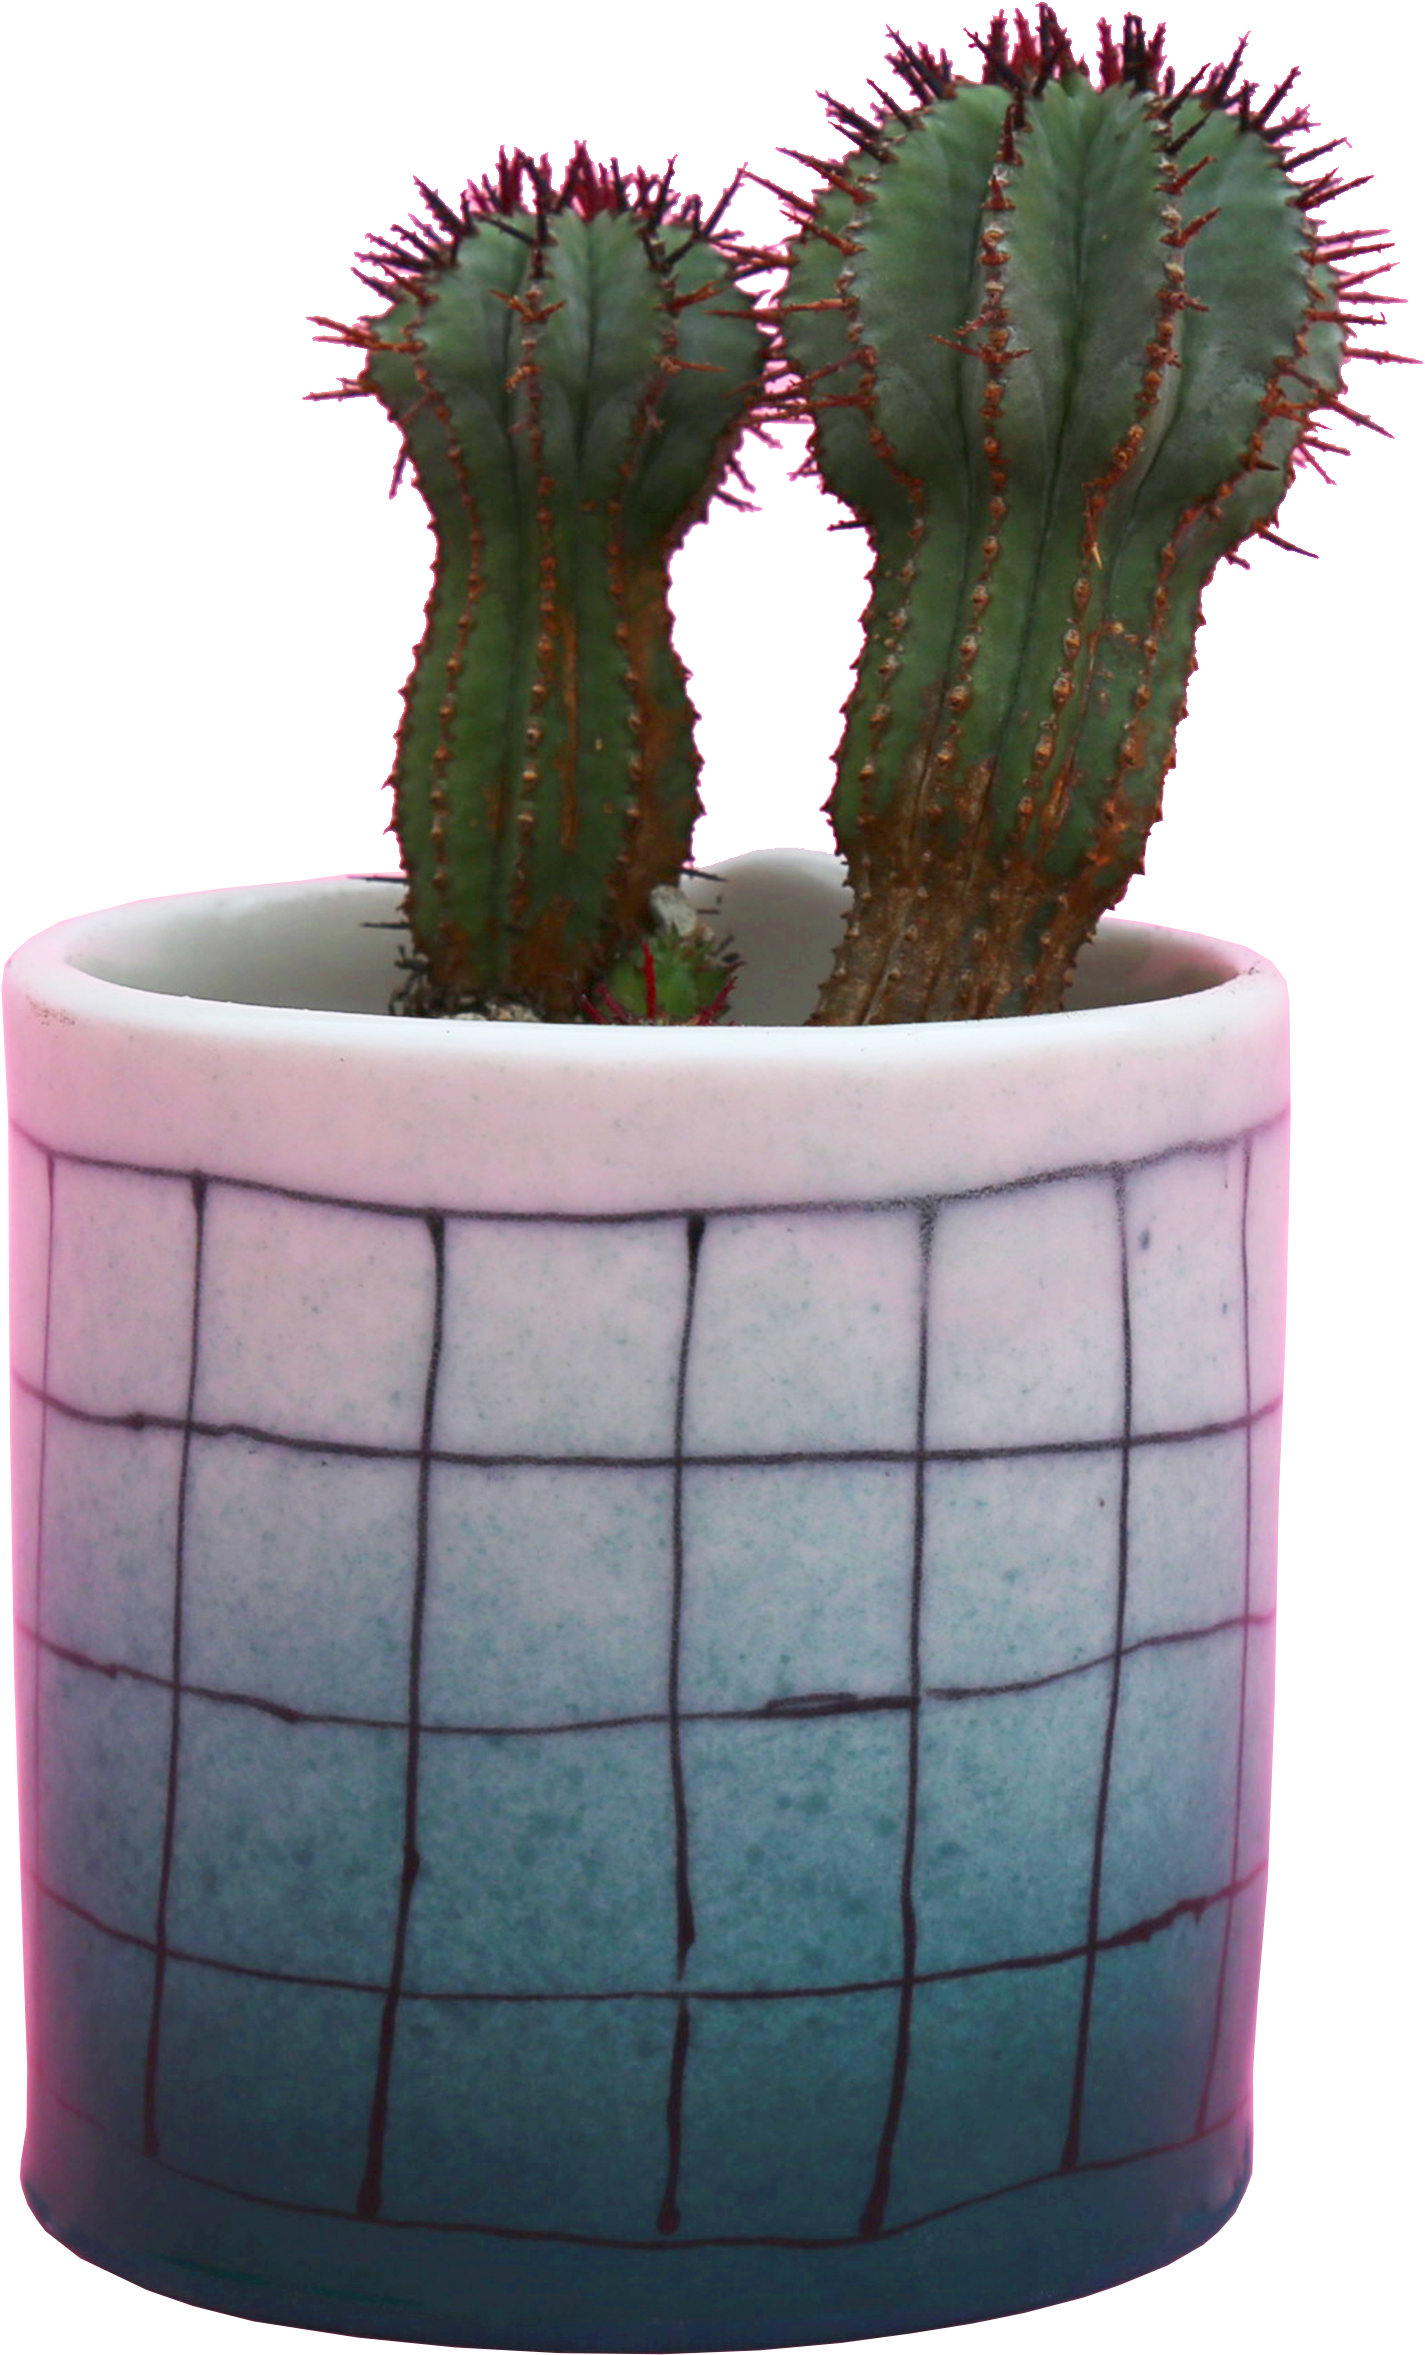 A Cactus In A Pot